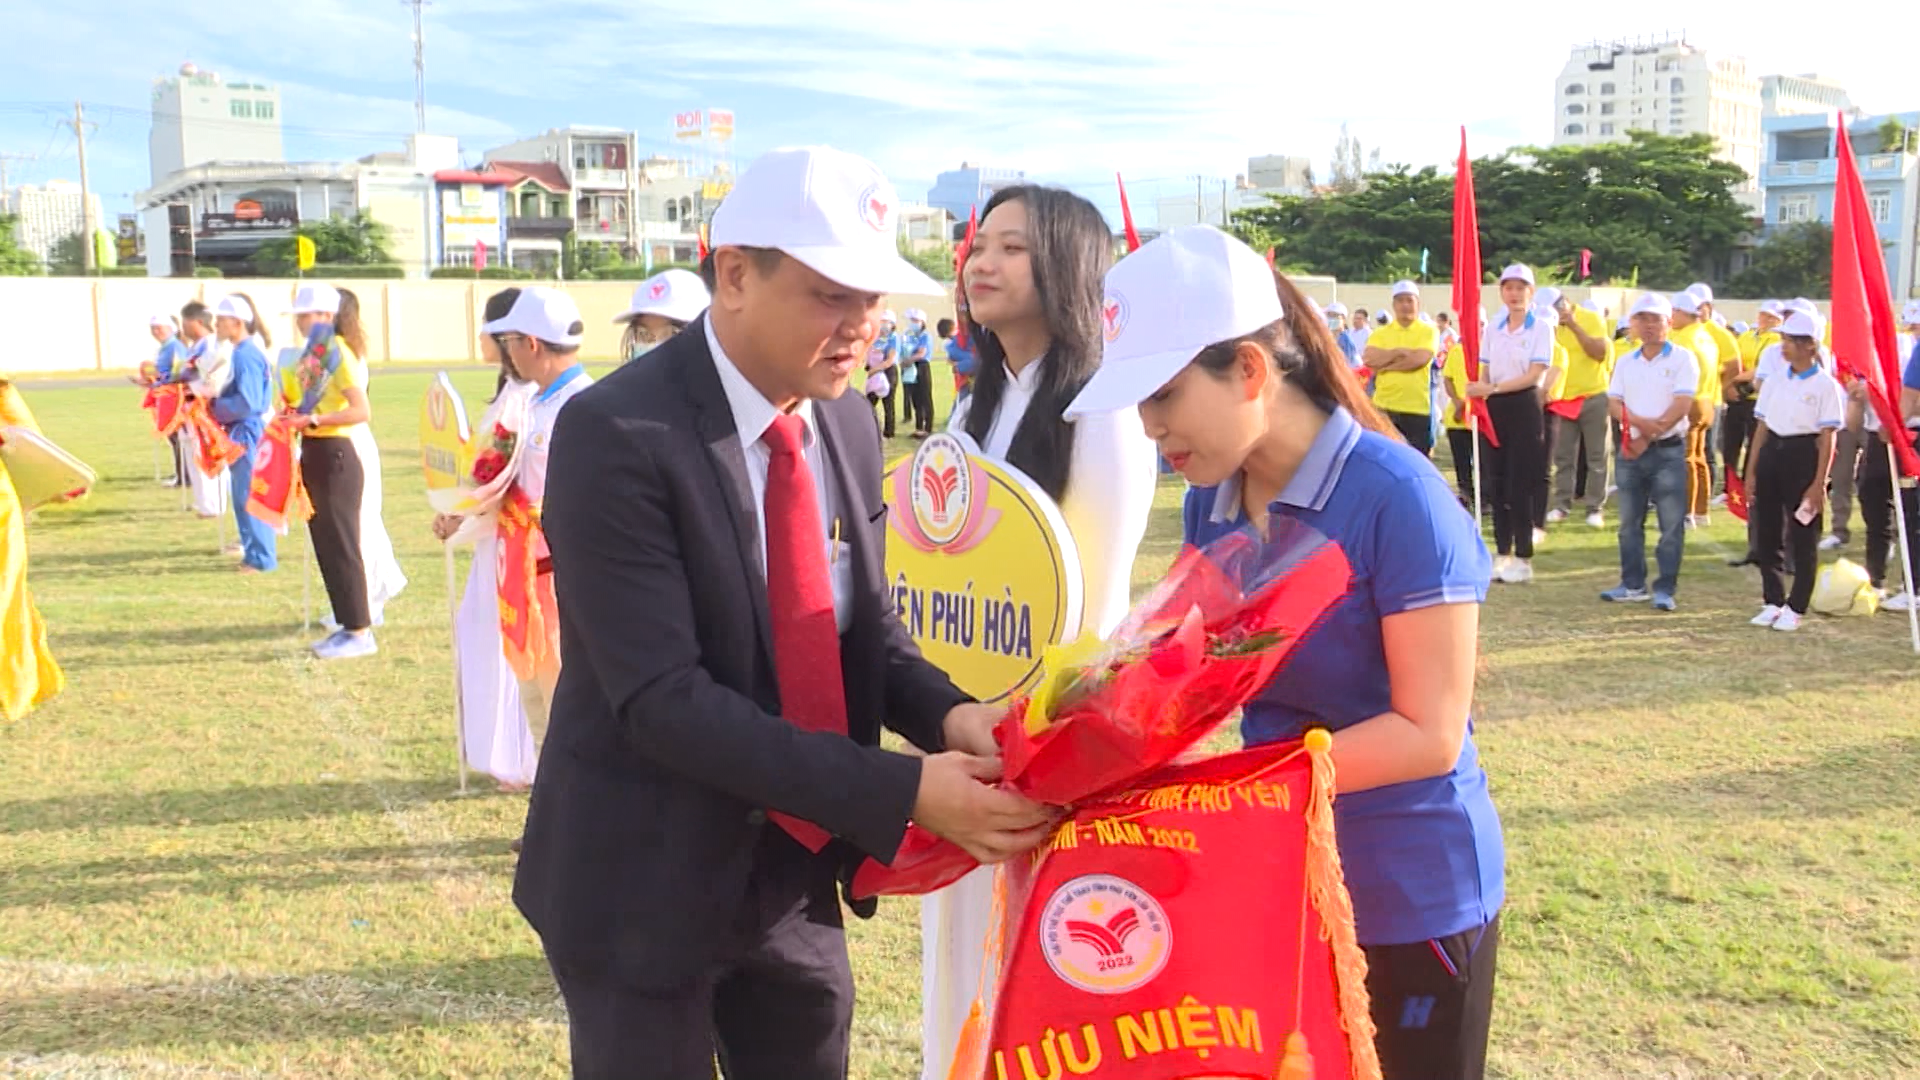 Lễ khai mạc Đại hội TDTT tỉnh Phú Yên lần thứ VIII năm 2022